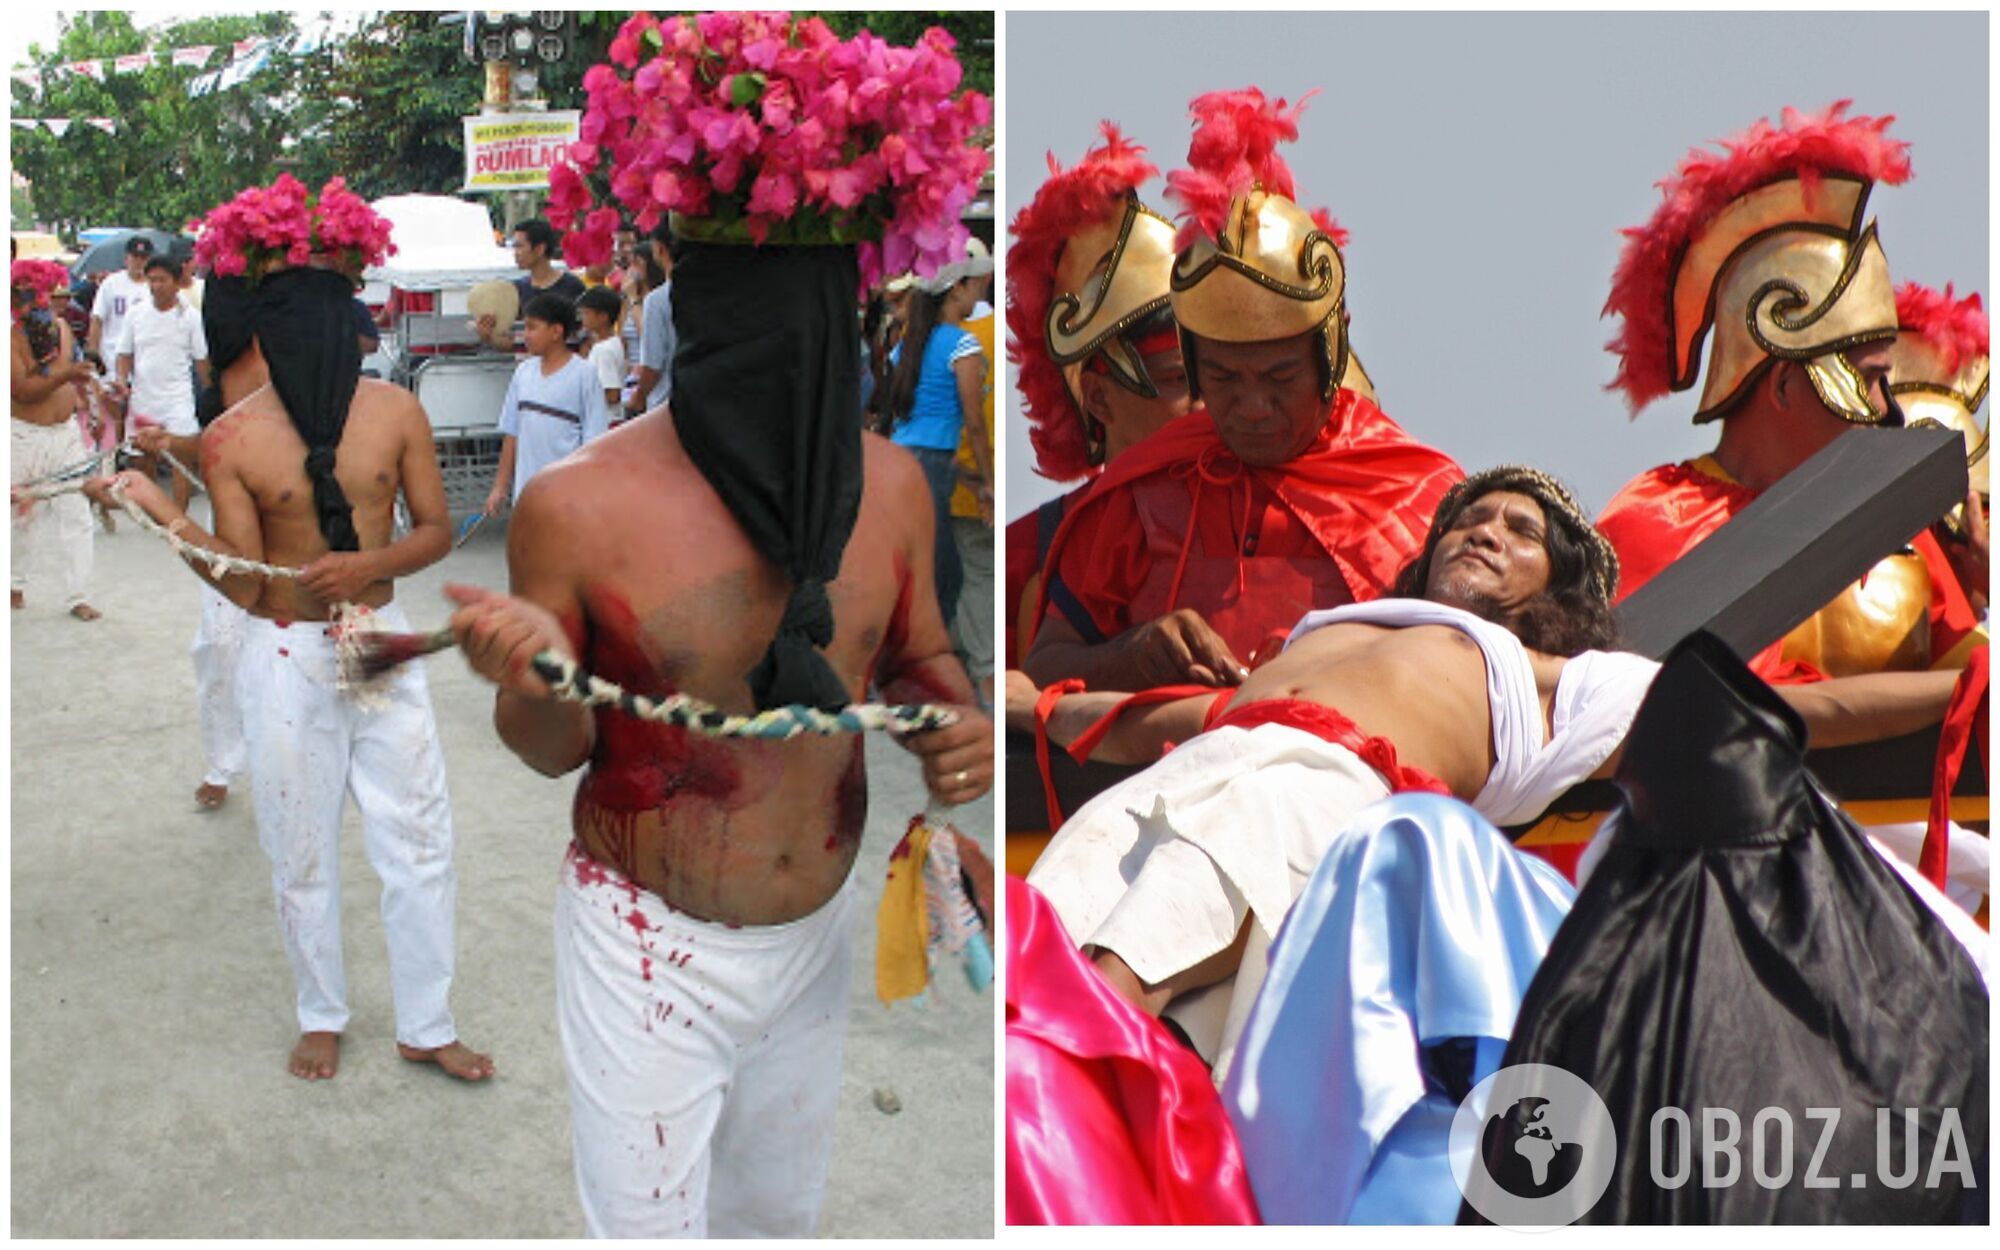 На Филиппинах в пятницу перед Пасхой сторонники римско-католической церкви проводят ритуал распятия Иисуса Христа